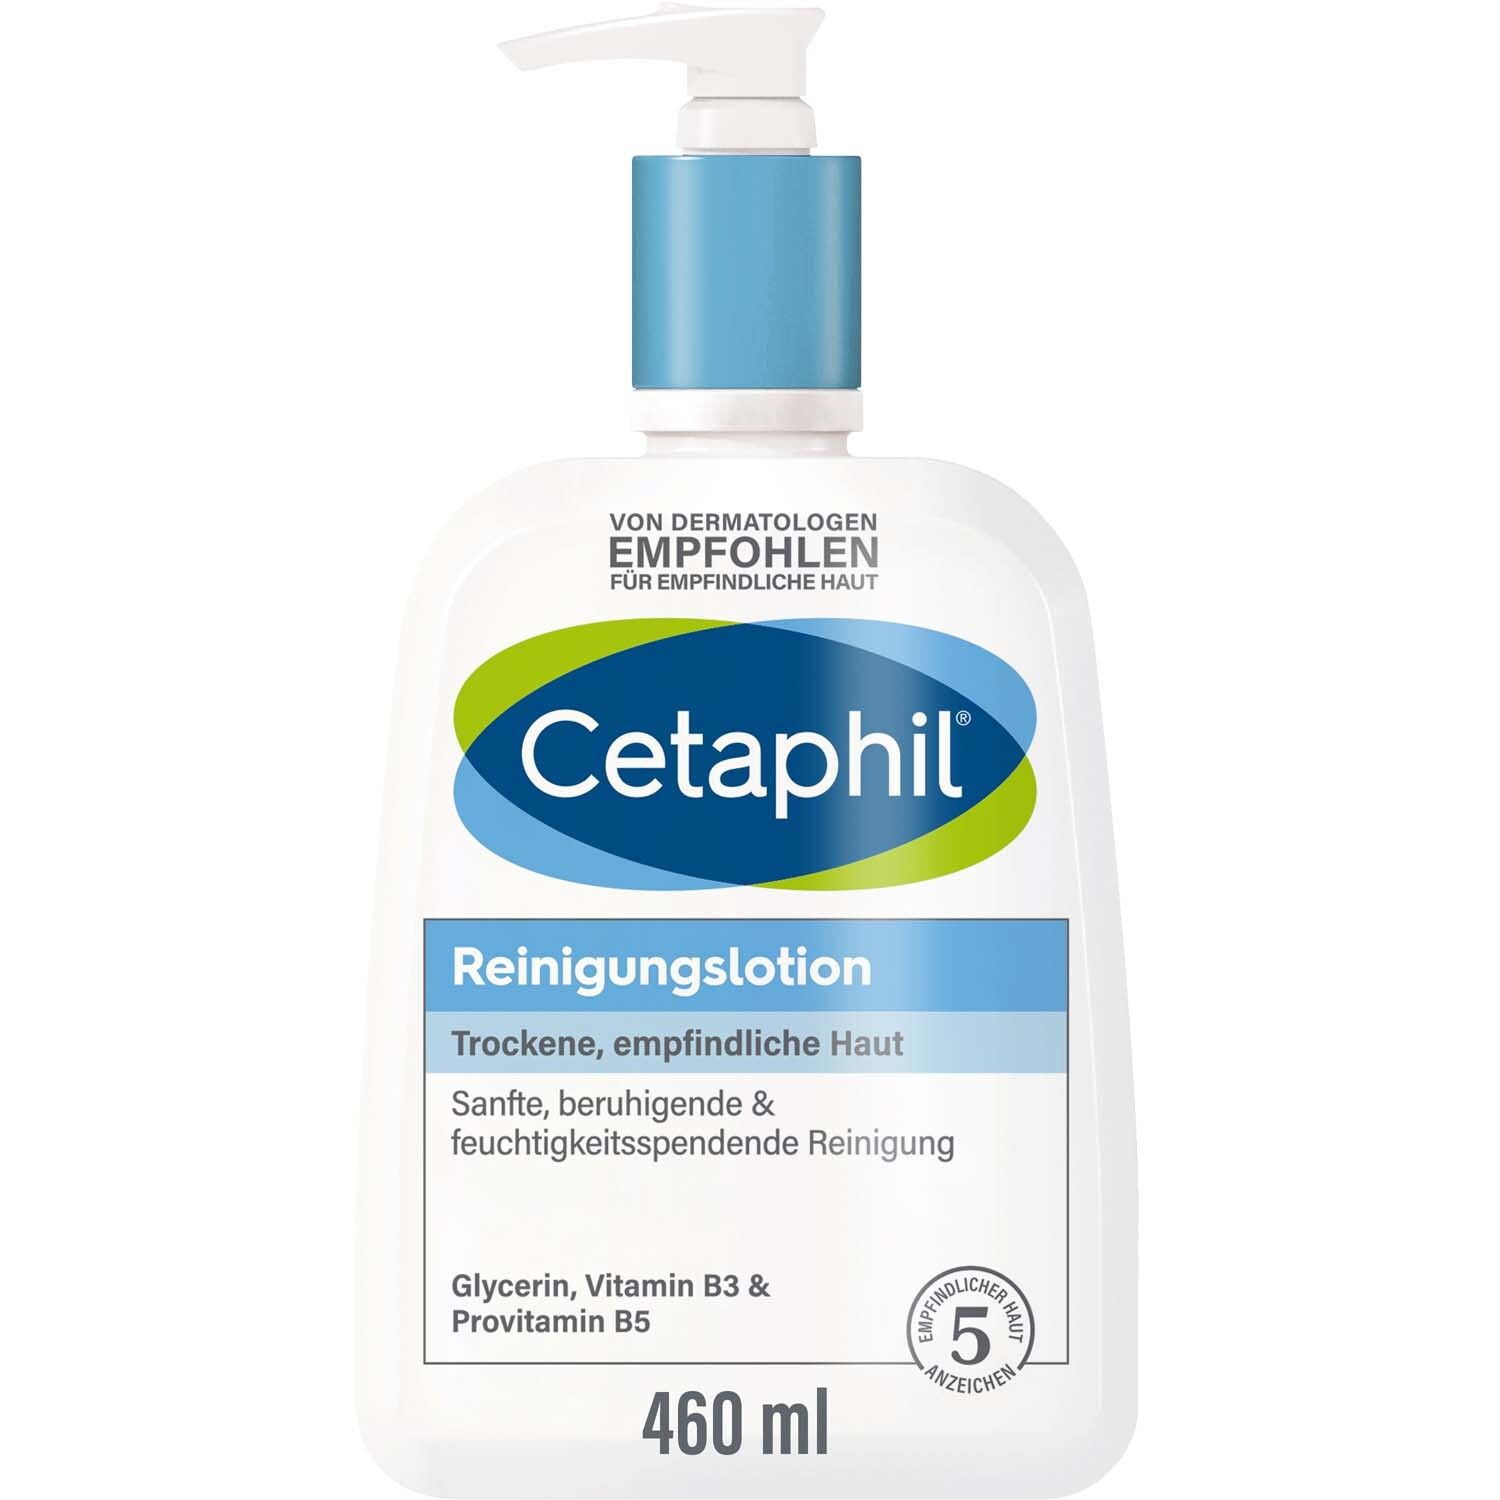 Cetaphil® Reinigungslotion für Körper & Gesicht + Cetaphil Pro ItchControl Pflegelotion Fullsize GRATIS